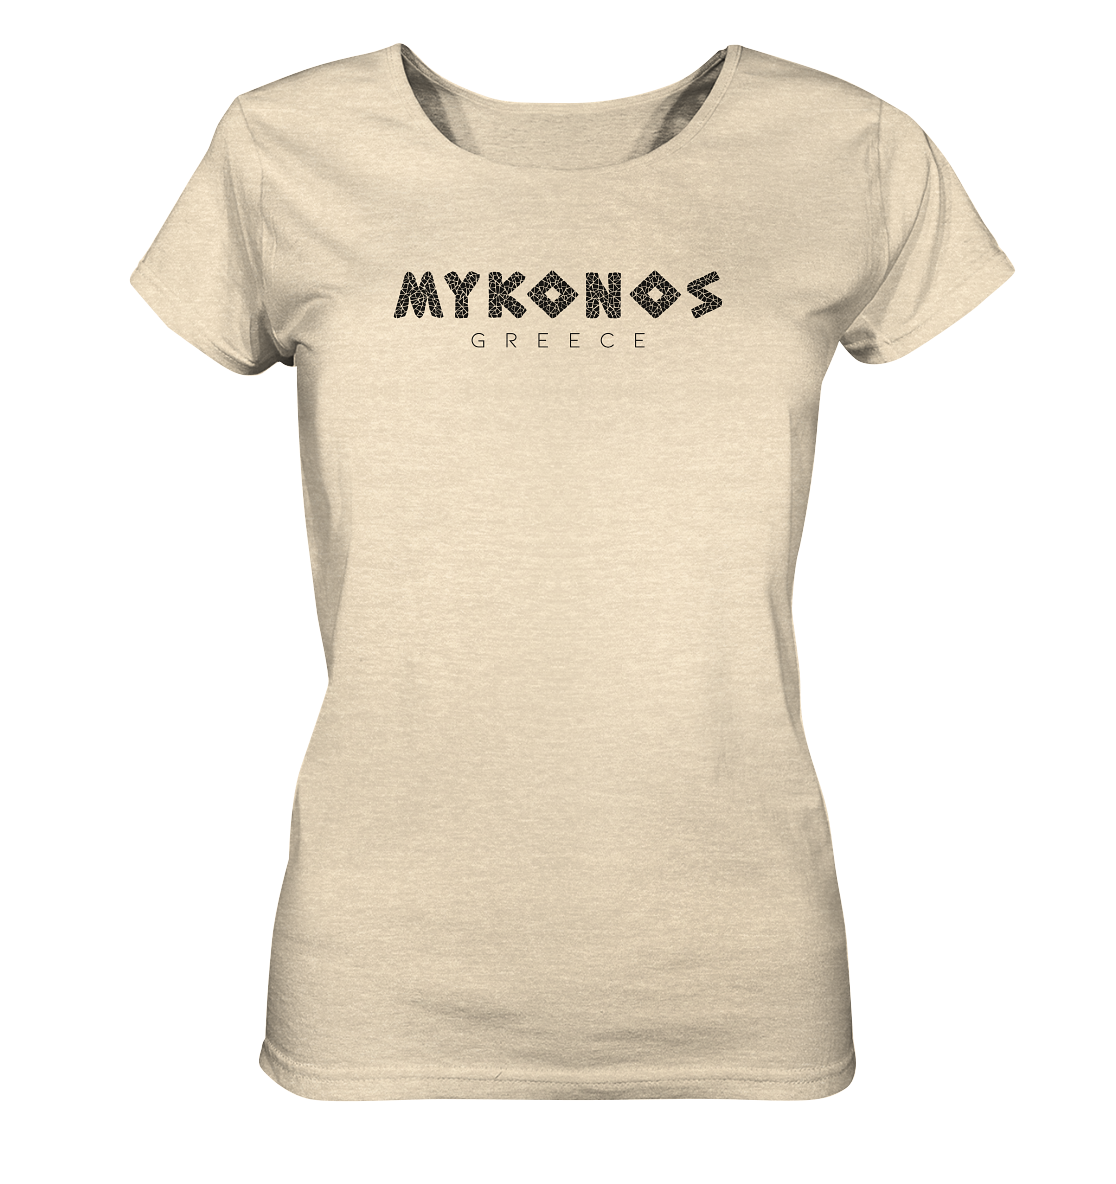 Mykonos Greece Mosaik - Ladies Organic Shirt